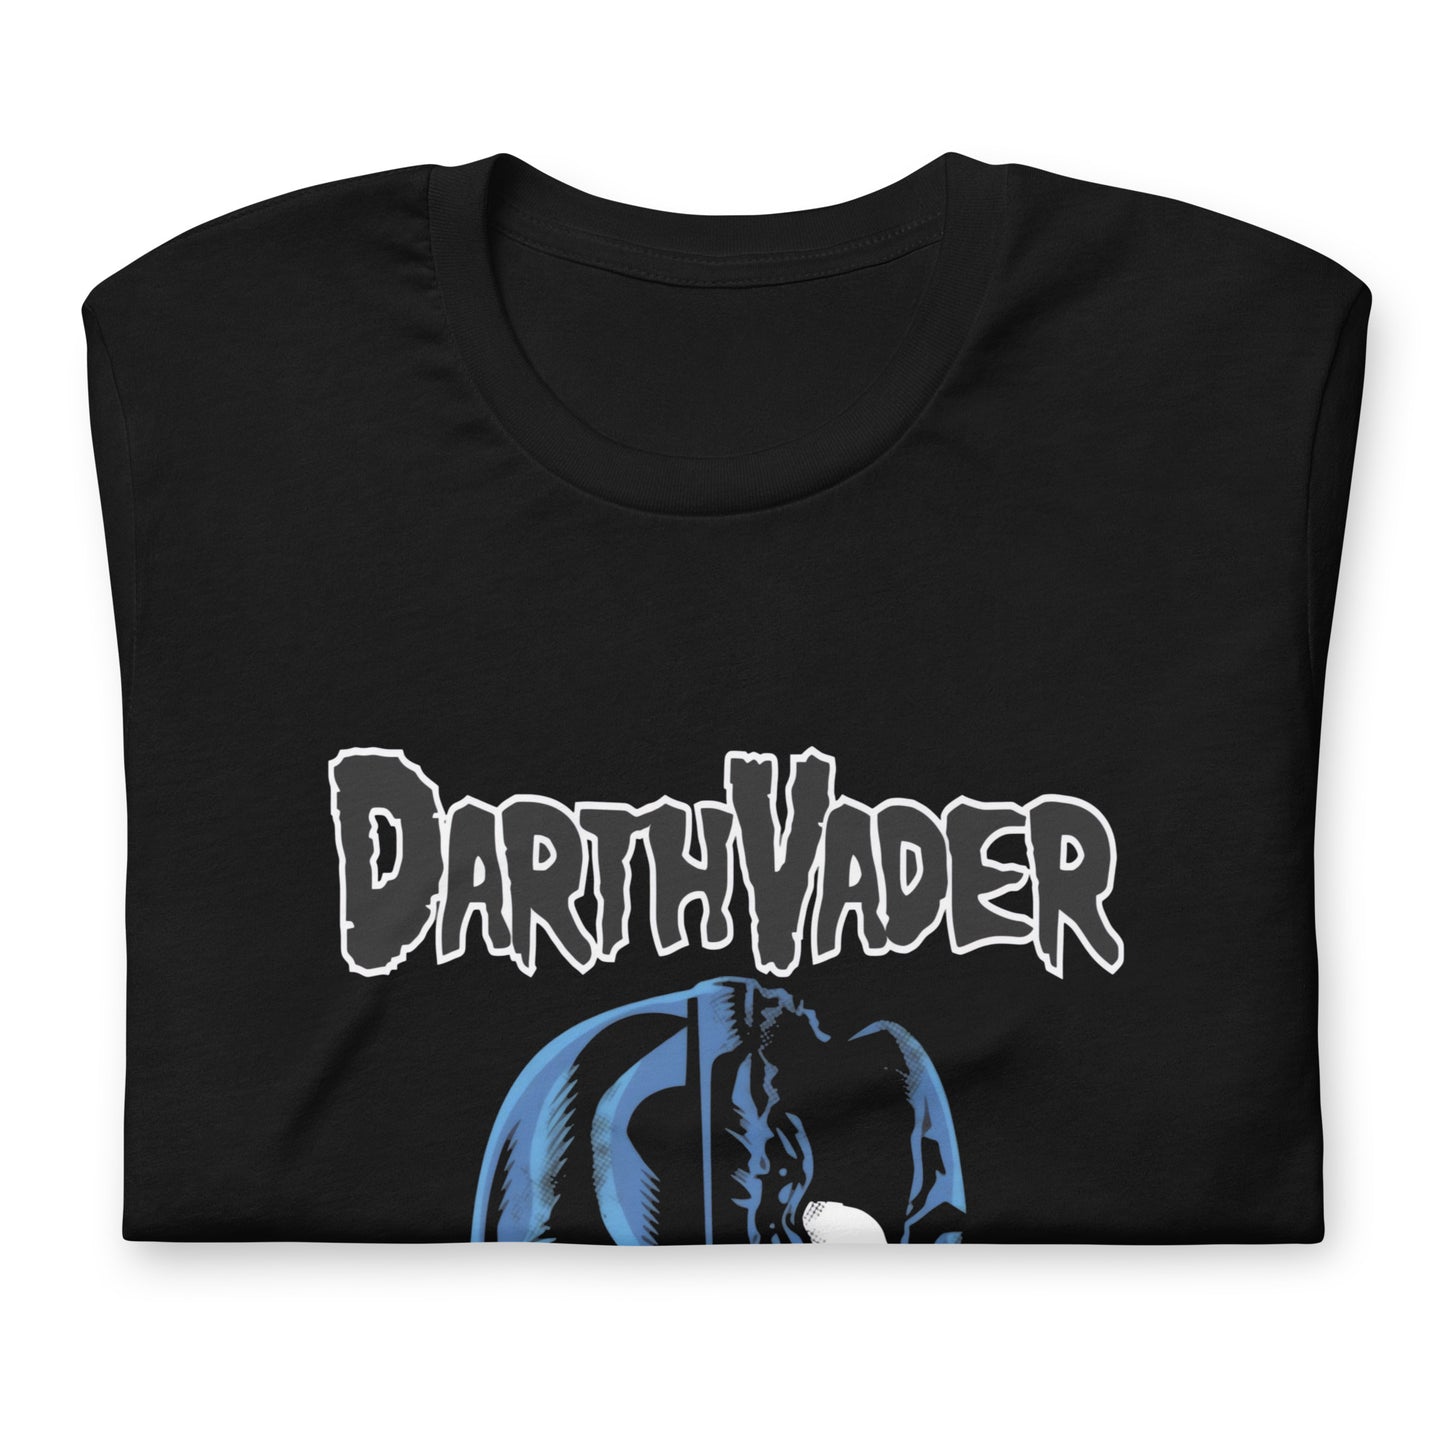 ¡Compra el mejor merchandising en Superstar! Encuentra diseños únicos y de alta calidad en camisetas únicas, Camiseta de DarthVader